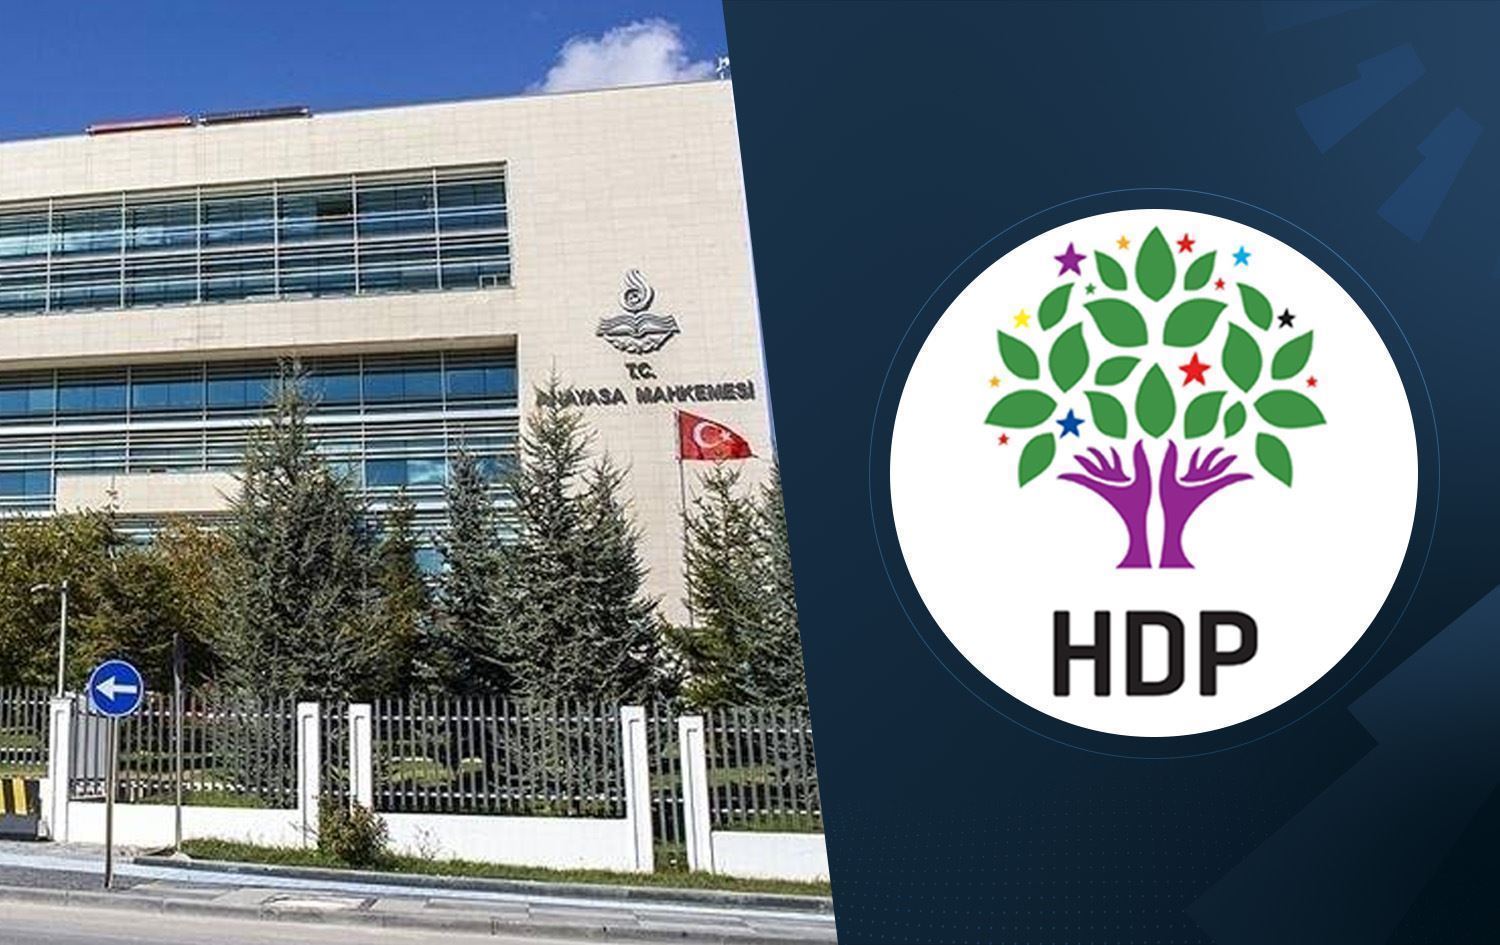 Anayasa Mahkemesi Başkanı ve üyeleri, HDP ( PKK’nın bir alt birimi) hakkında verdiği son karar olan HDP için hazine yardımını serbest bırakmakla, TC’ni korumak ve kollamakla yükümlü olduğu Anayasa maddelerine karşı suç işlemiş ve teröre destek çıkmıştır. - anayasa mahkemesi hdp karari